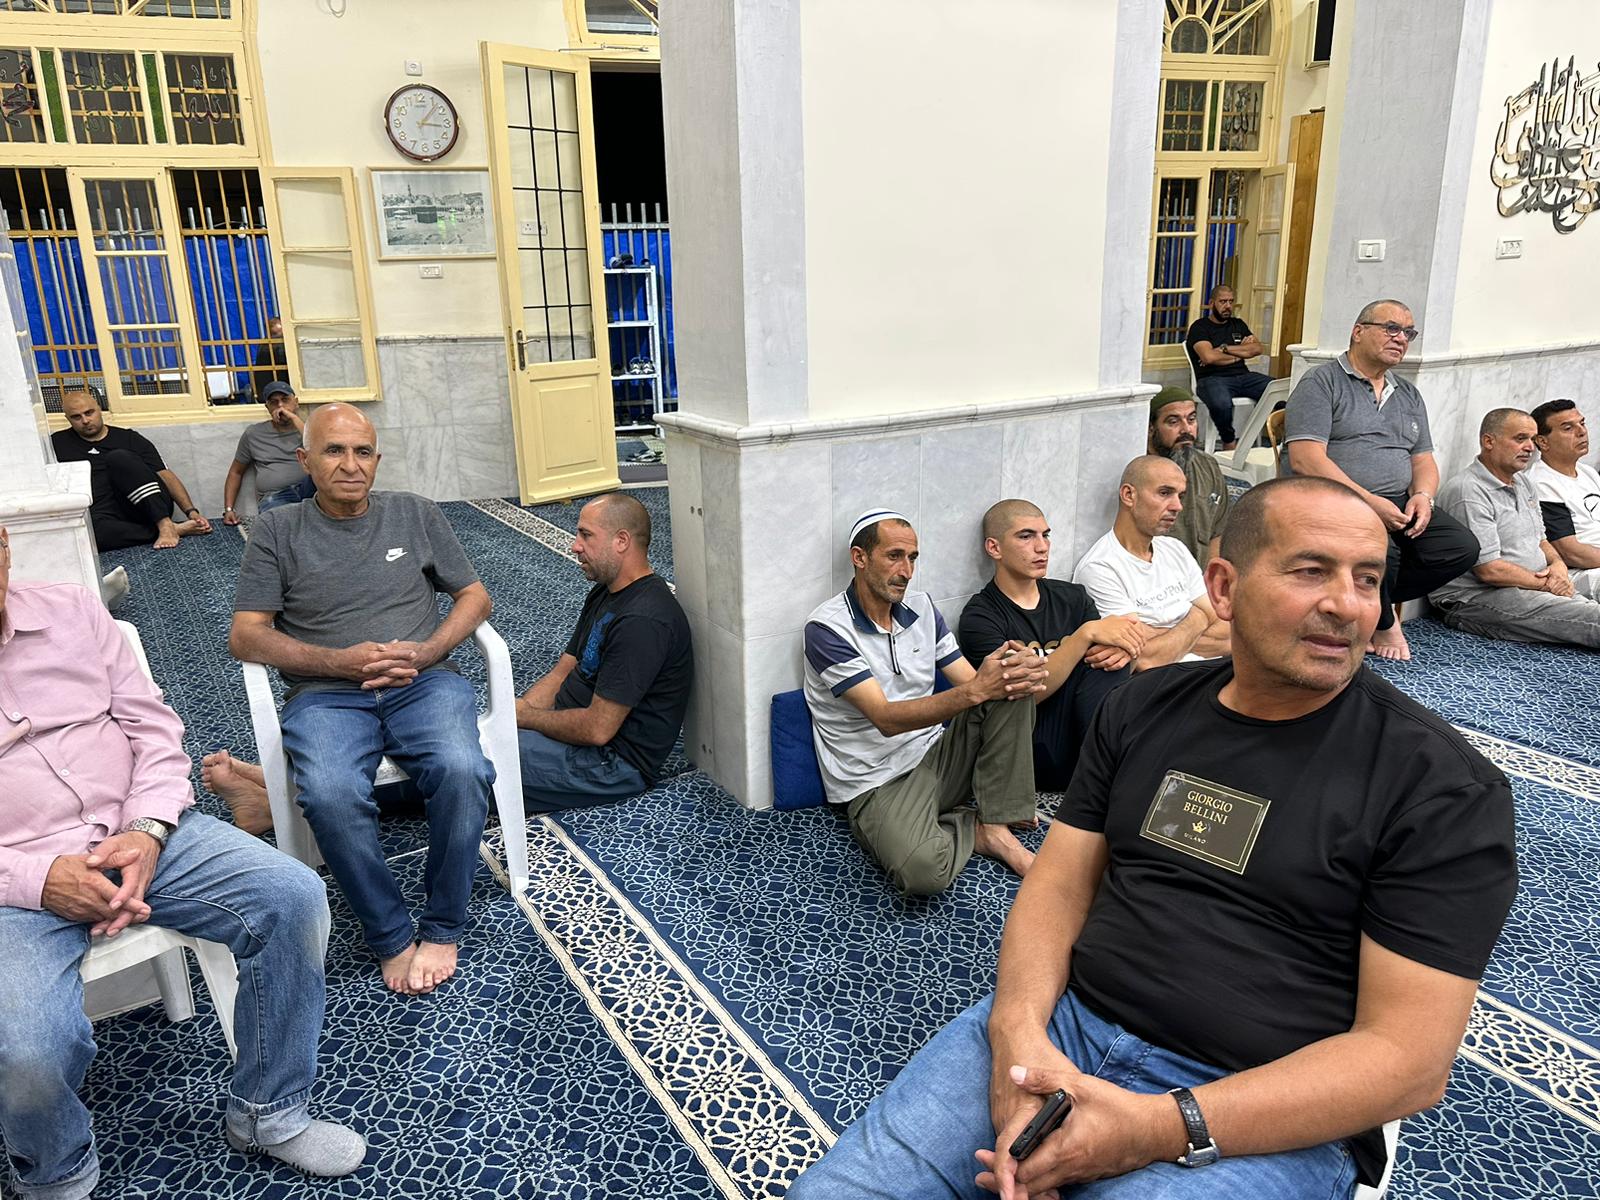  يافا: الشيخ سليمان أبو صويص يحل ضيفا على مجالس الإيمان في مسجد النزهة 